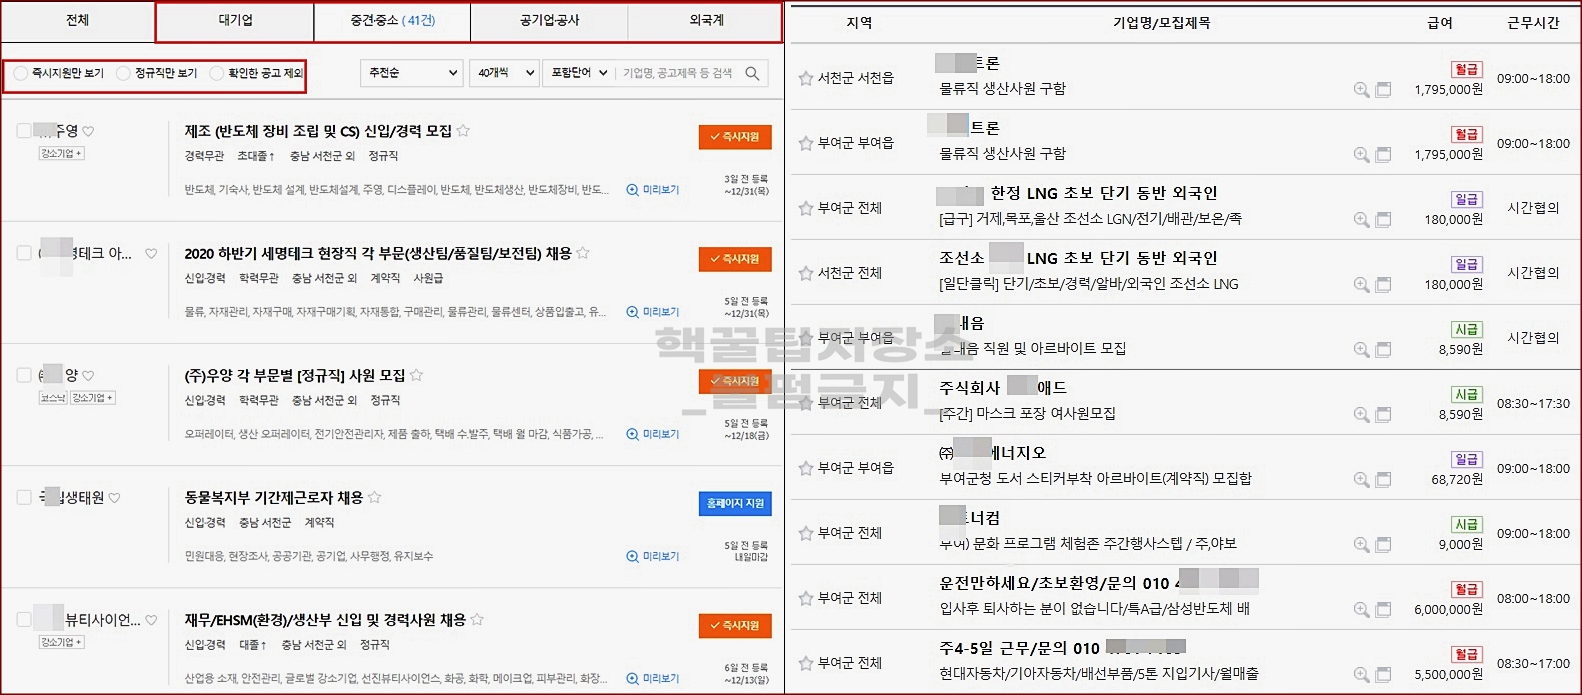 서천군 취업 사이트 일자리 찾기